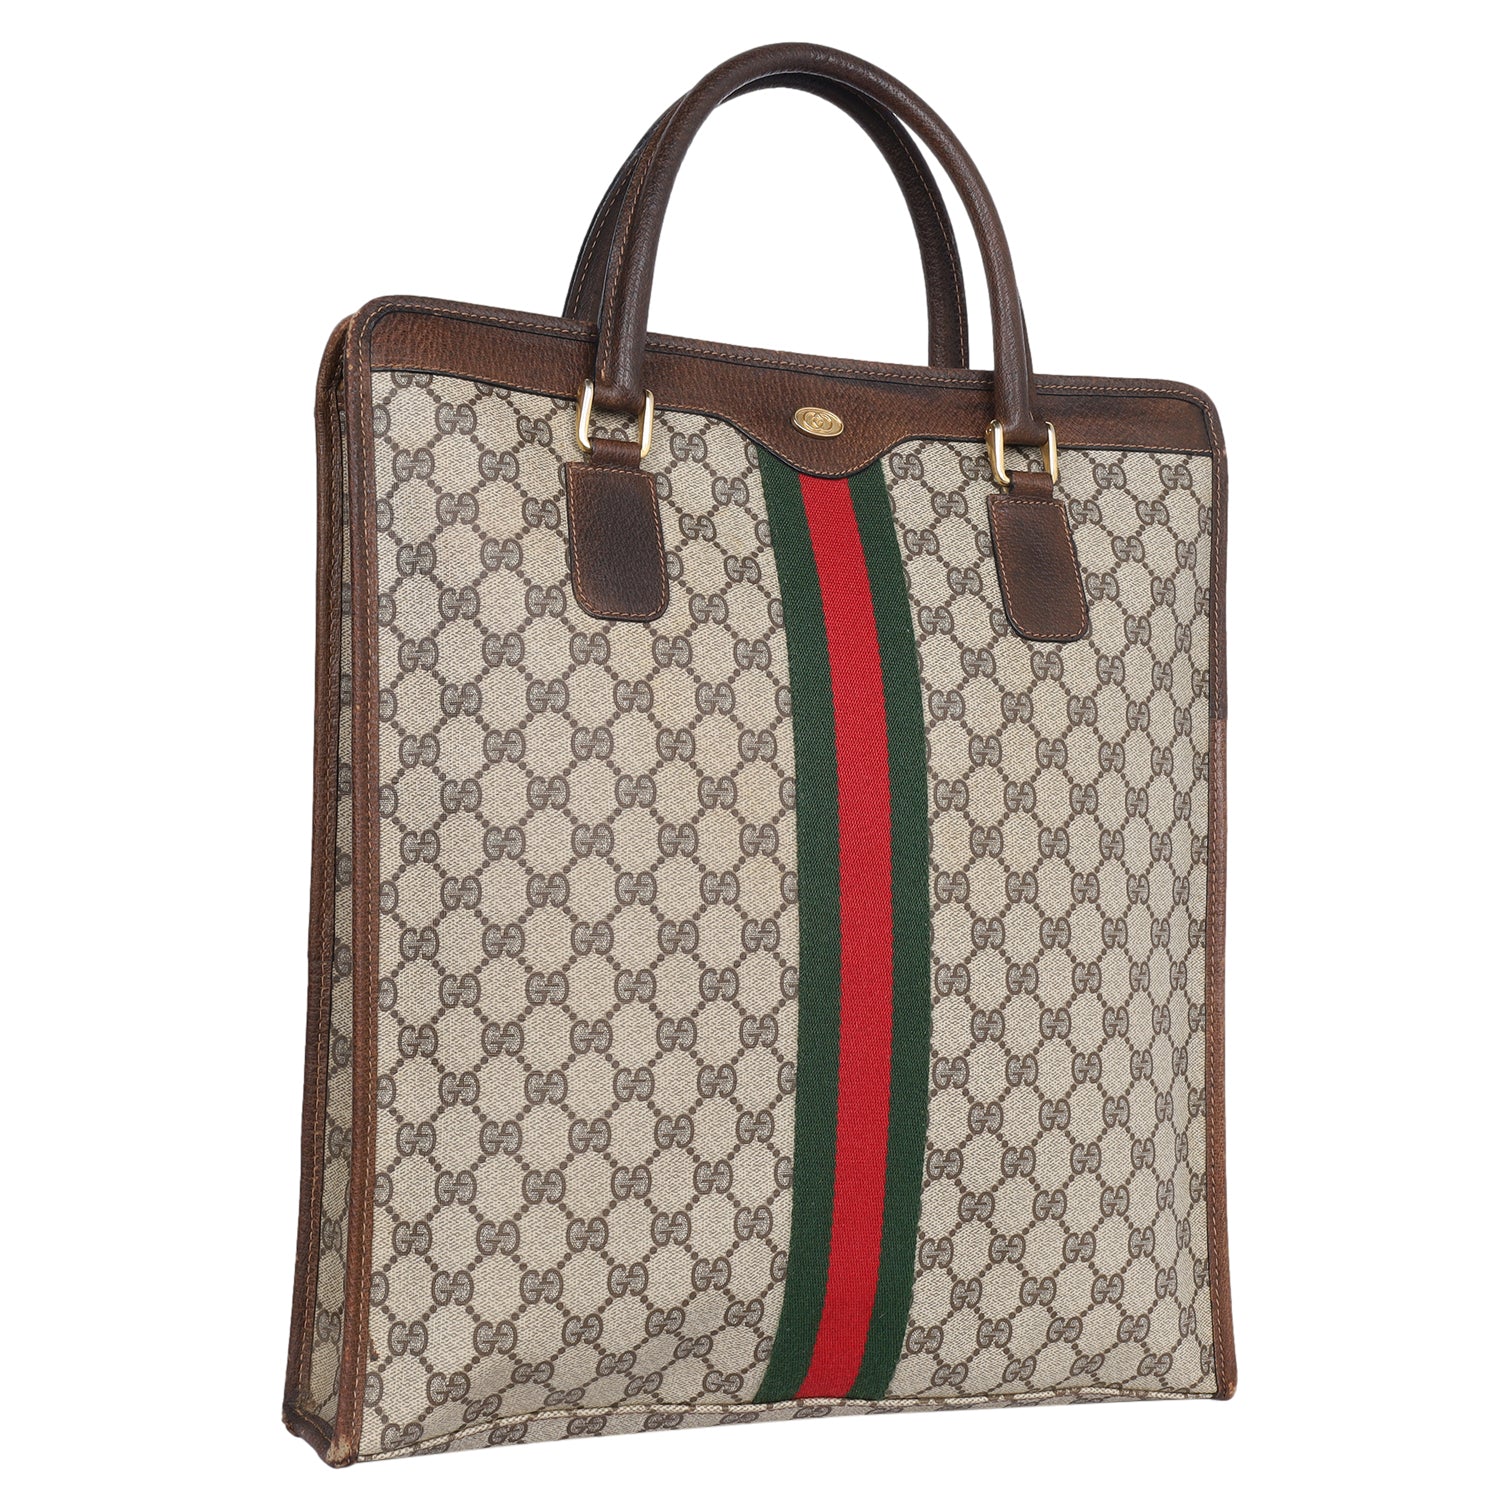 Vintage Gucci Ophidia Handbag Purse Vintage Gucci Purse Handbag